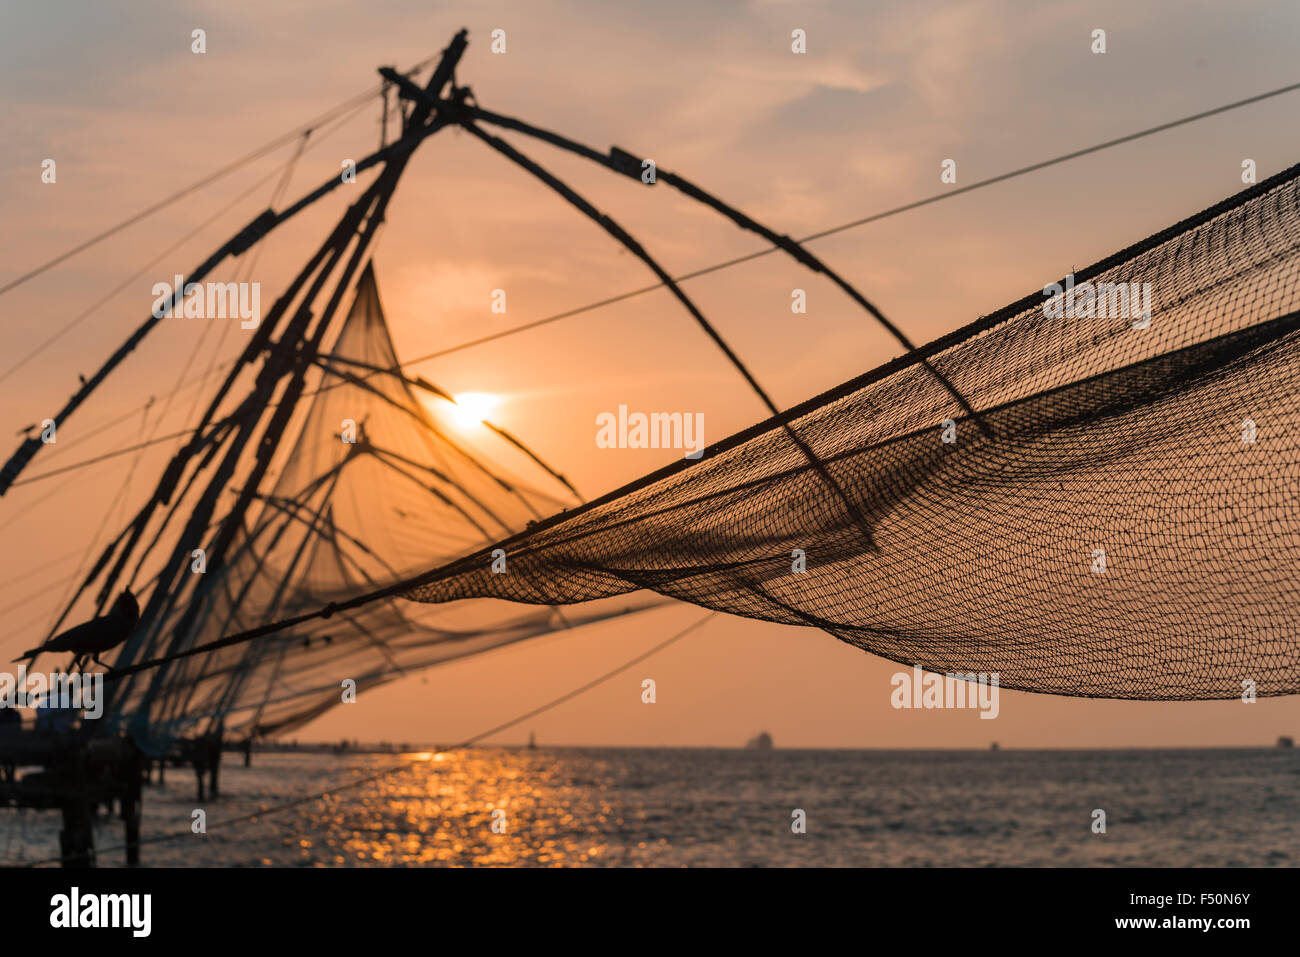 Cinese di reti da pesca, situato in fort kochi, al tramonto Foto Stock